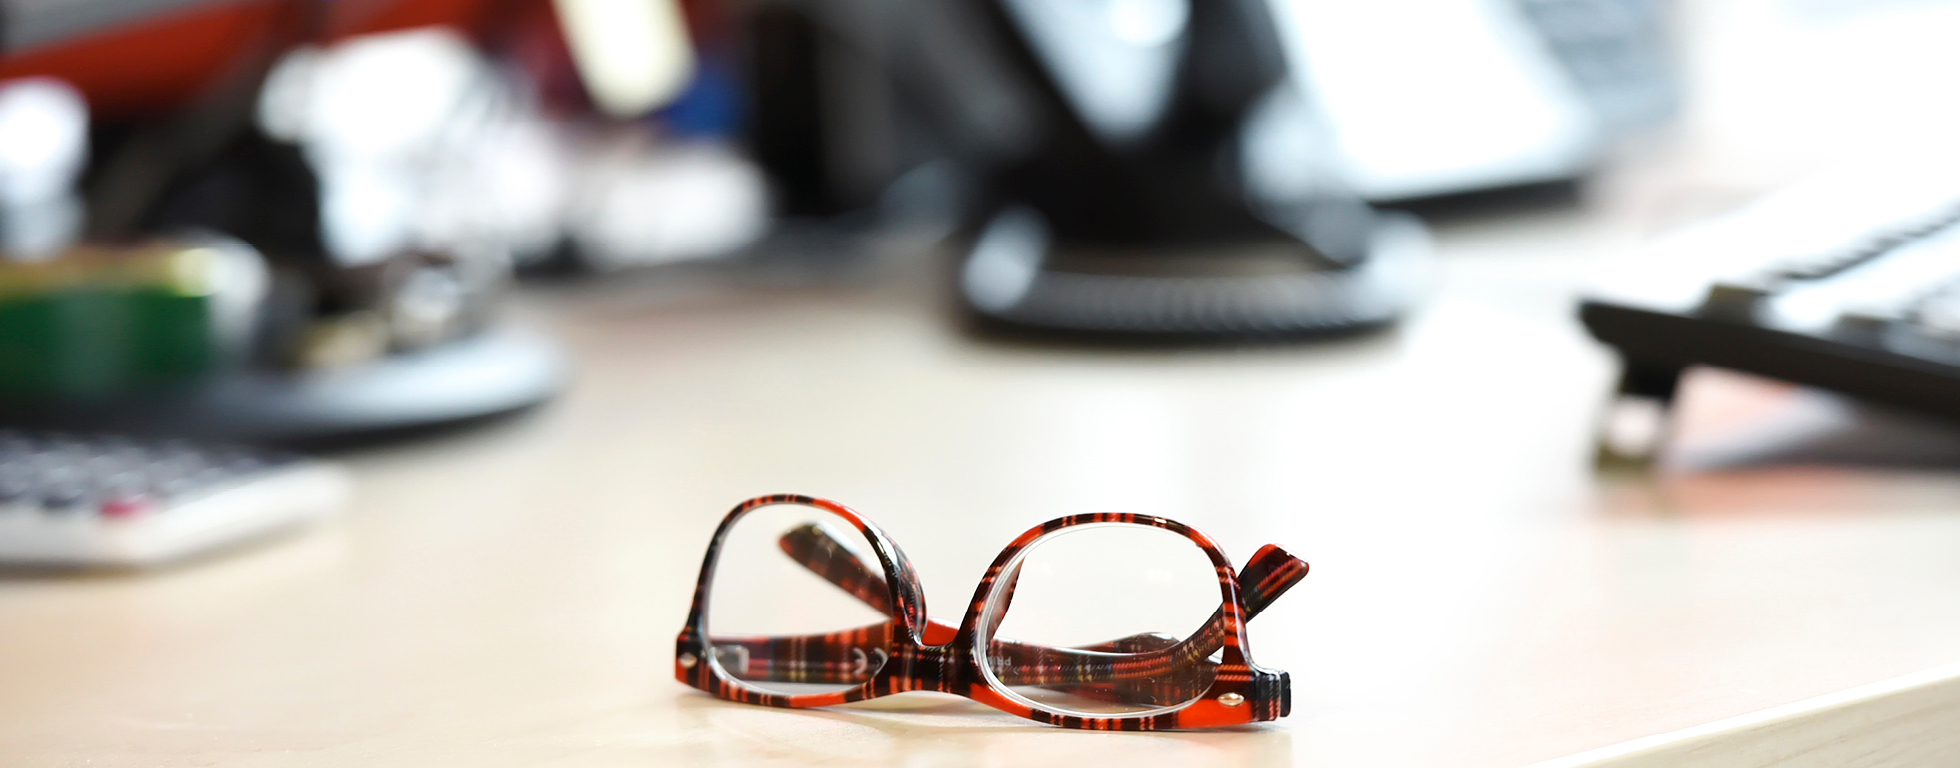 Office shot - glasses